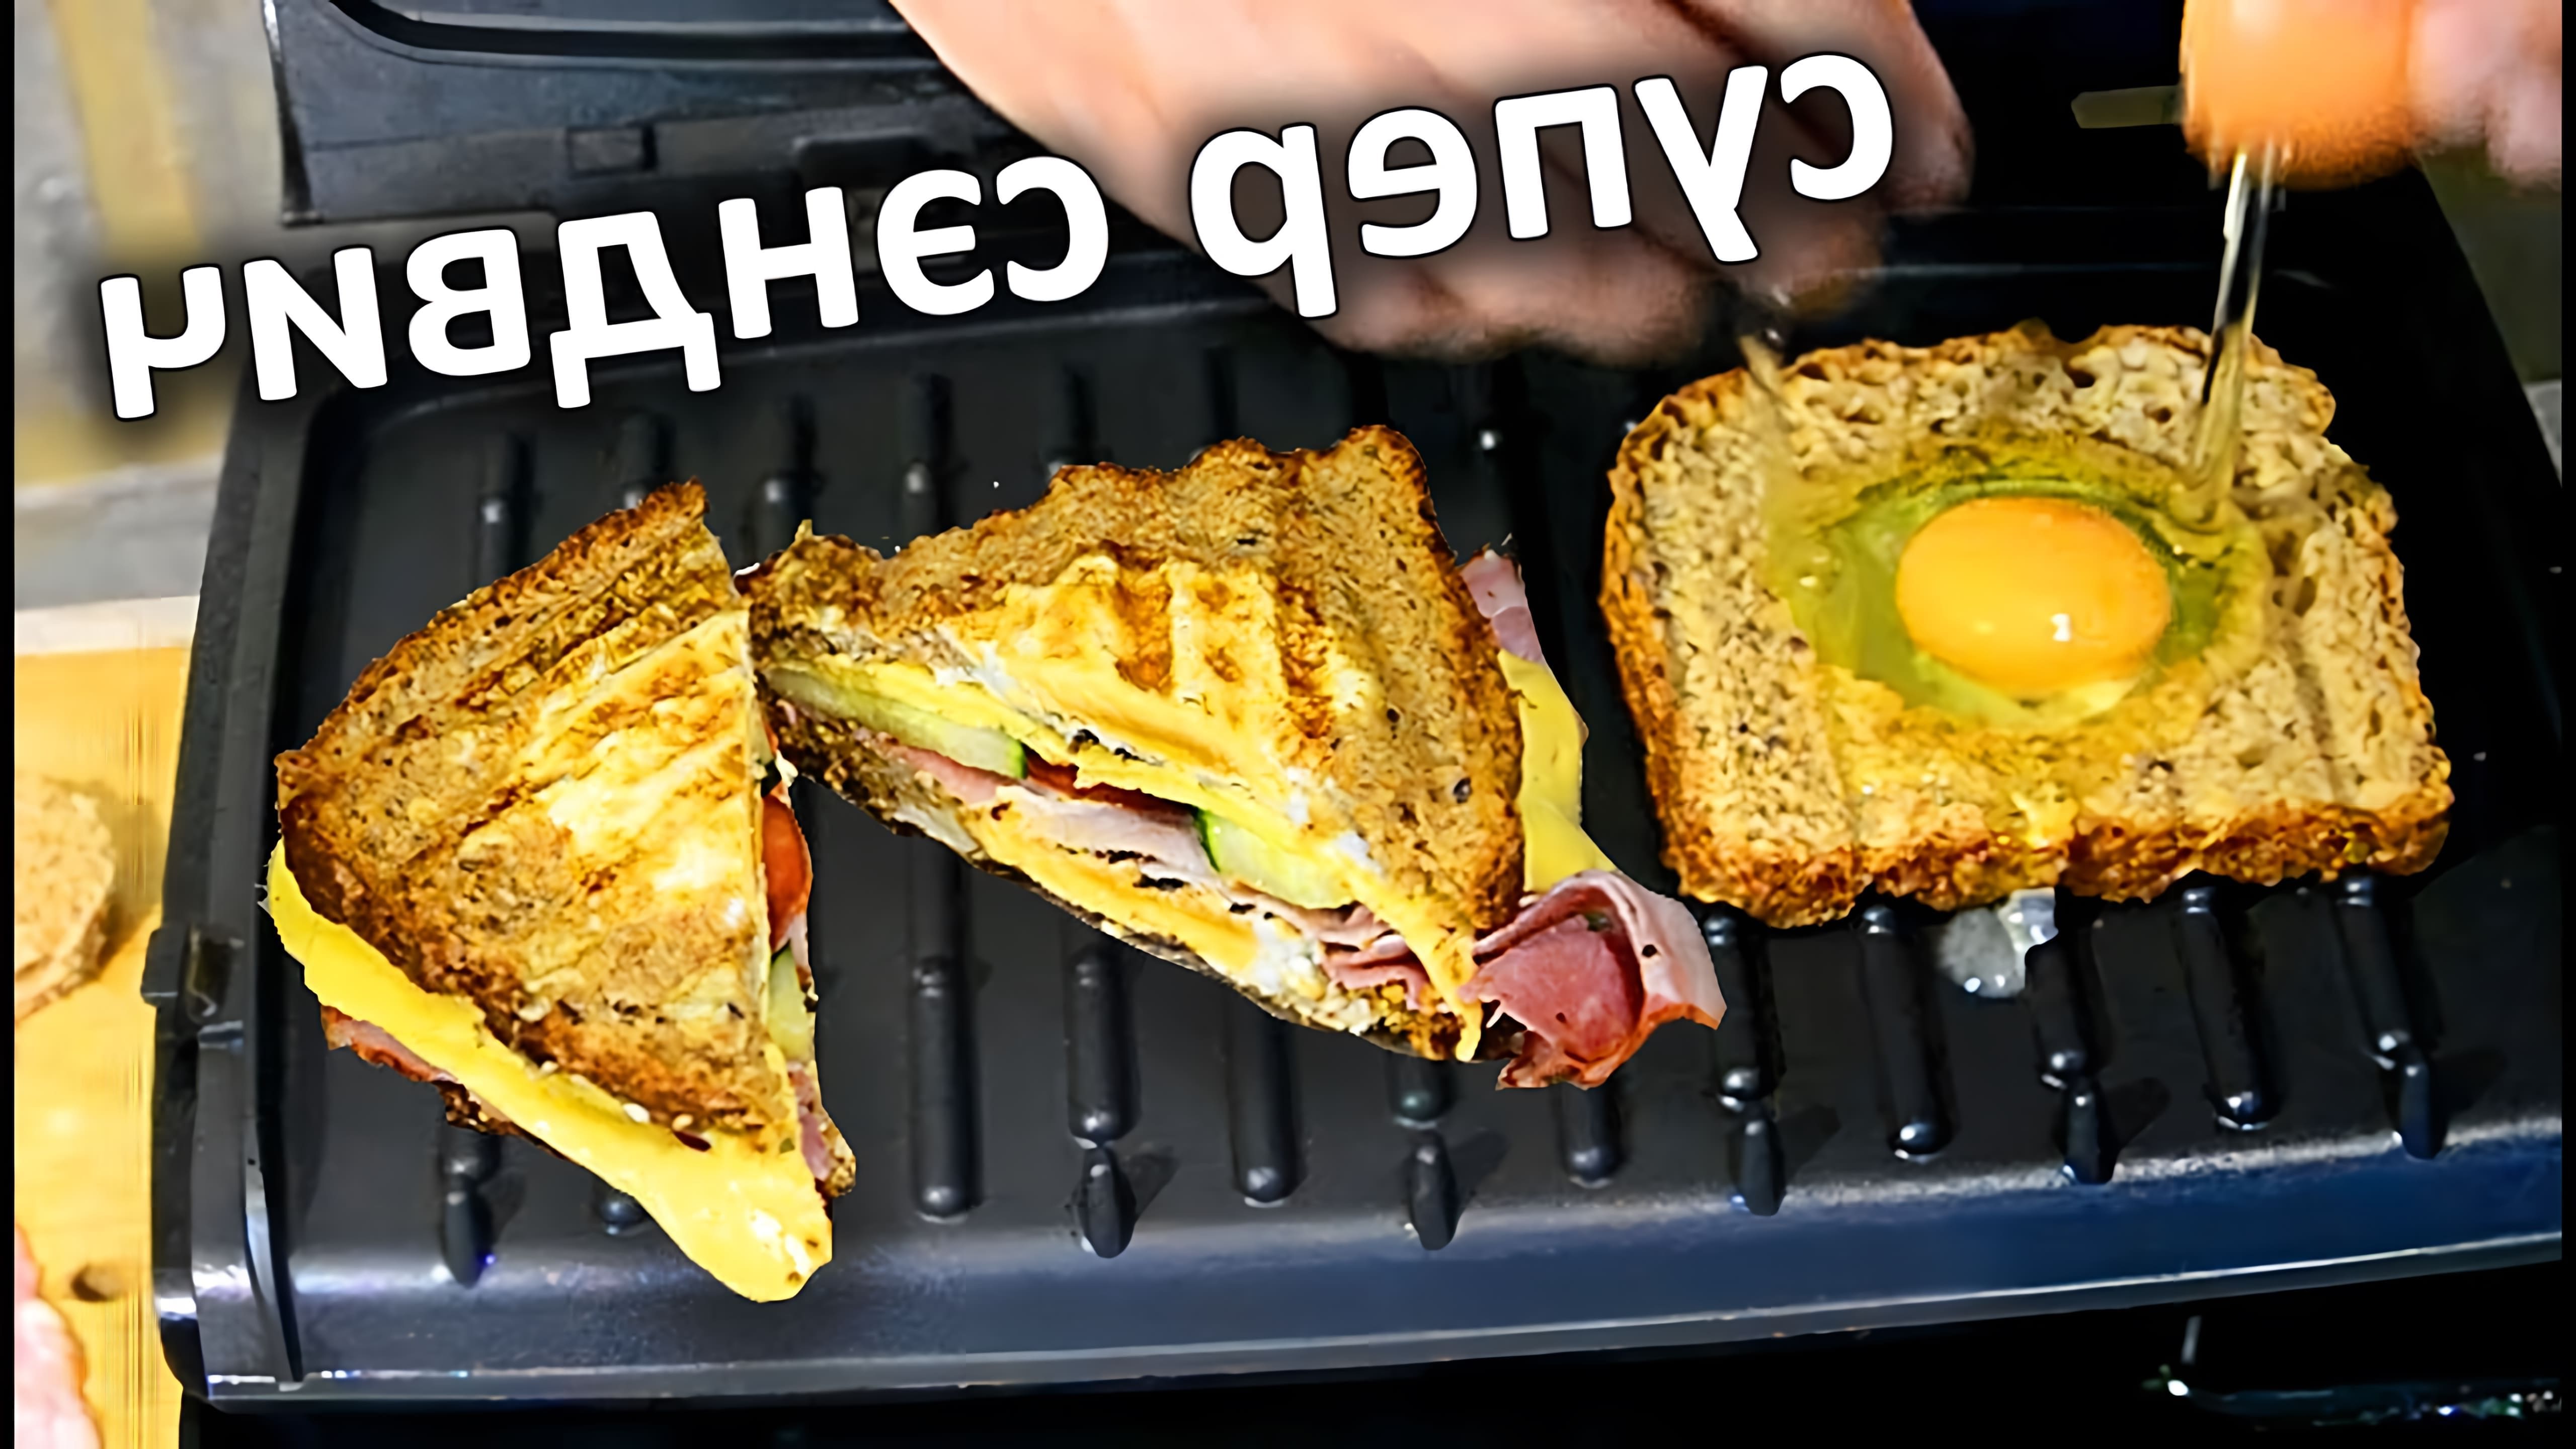 В этом видео демонстрируется процесс приготовления яичного сэндвича с беконом и сыром на электрогриле